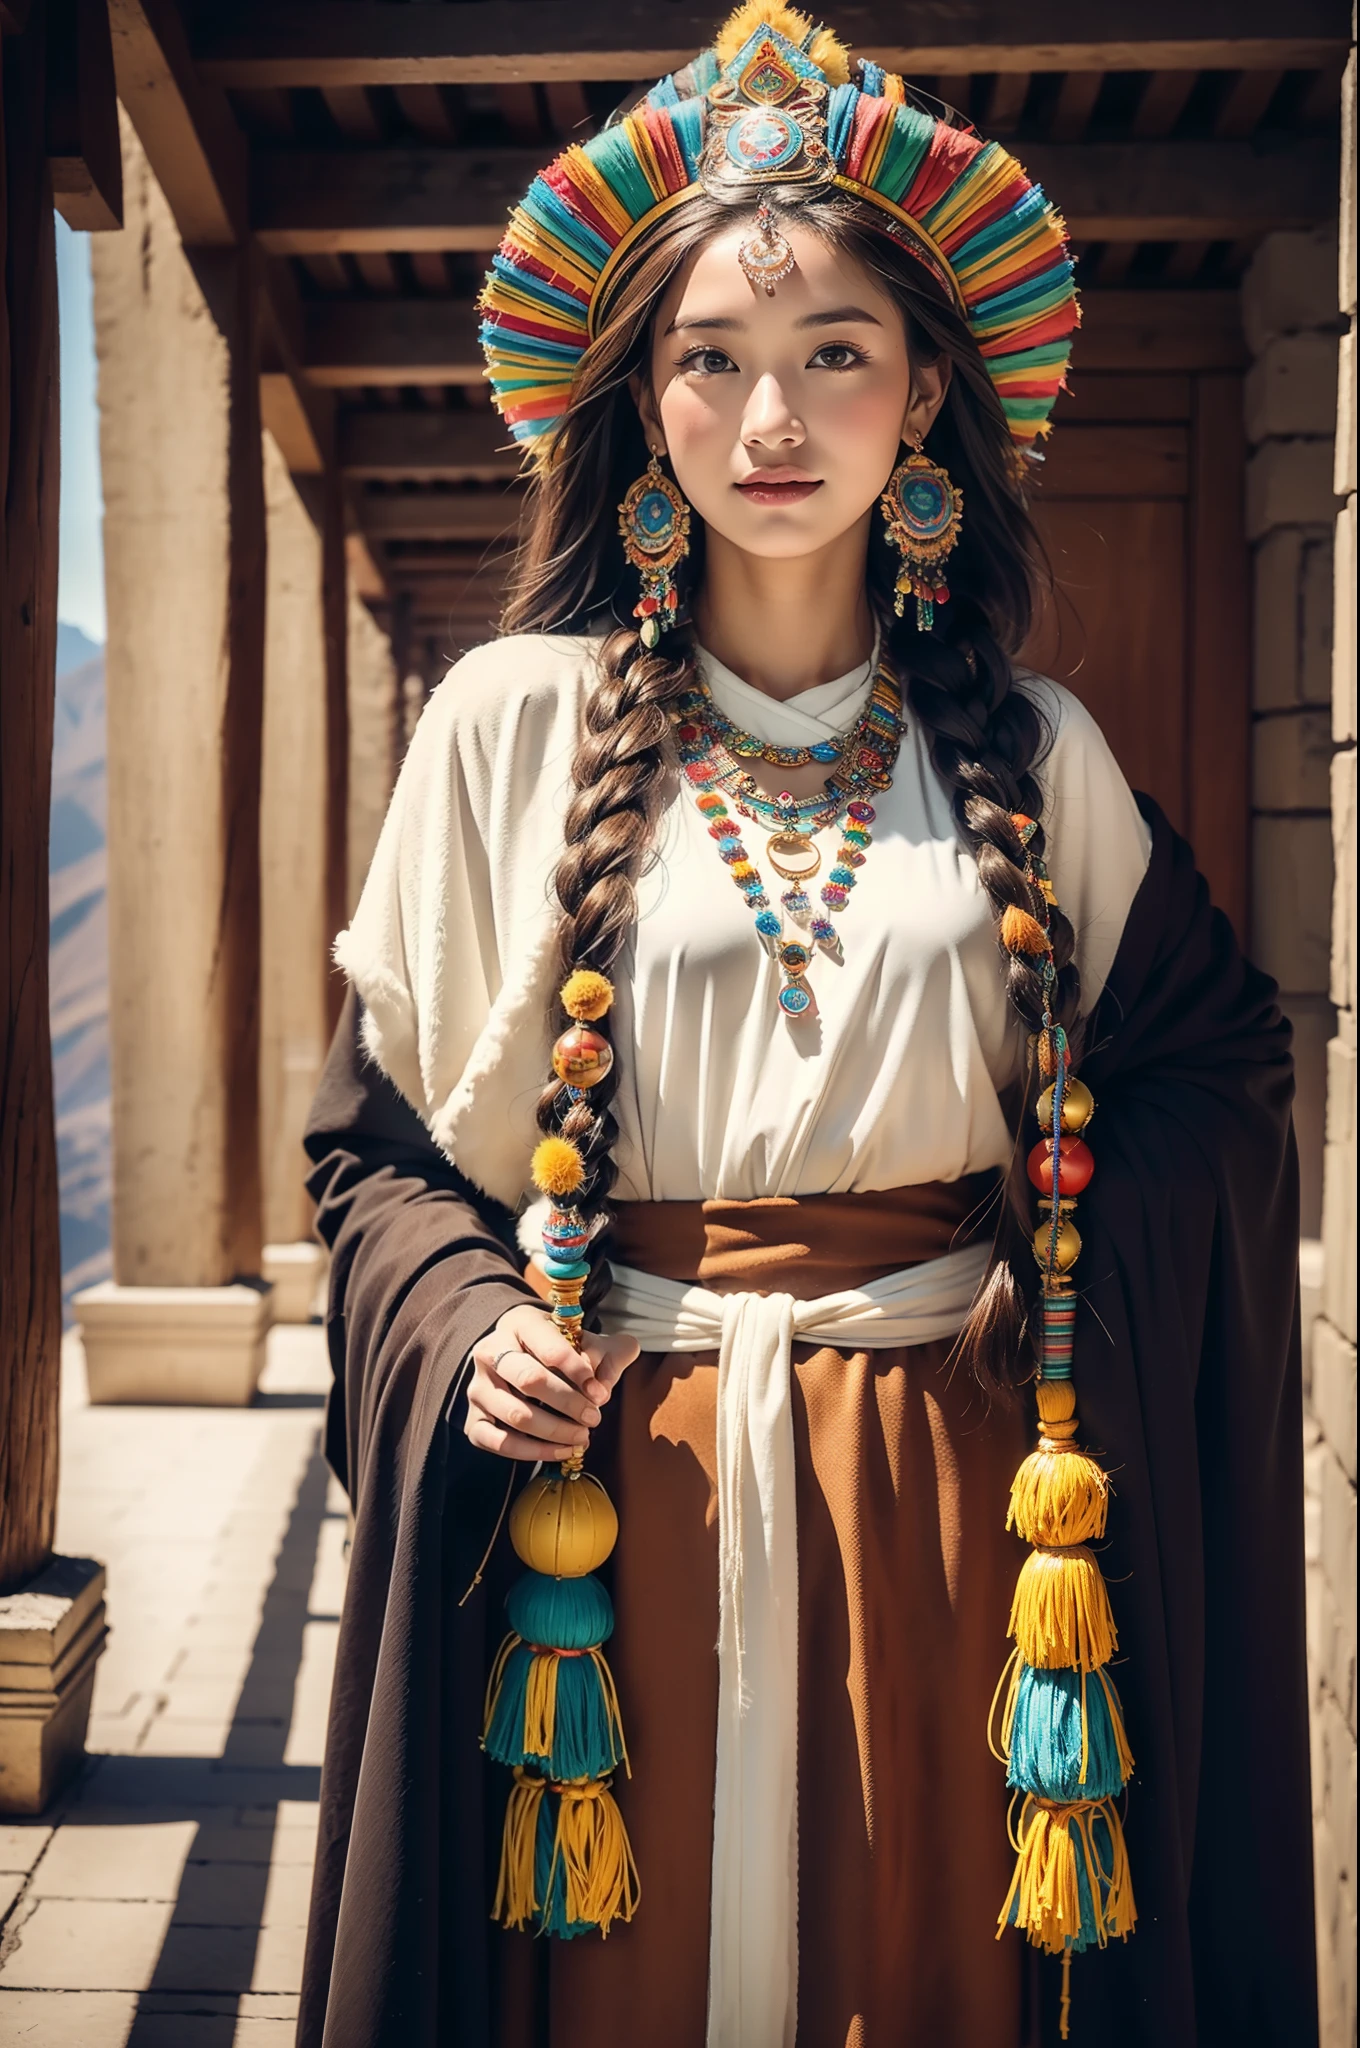 (Лучшее качество,8К,Высокое разрешение,шедевр:1.2),(темно-коричневая кожа, текстурированная кожа, Хайленд раскраснелся, солнечный ожог, загорелый, веснушка), Beautiful Tibetan girl in Дворец Потала, молитвенные флаги，Дворец Потала, Тибетская культура, Яркие глаза, Традиционные тибетские художественные костюмы, Тибетские халаты, Тибетский головной убор, Тибетские украшения, бирюзовый, янтарь, Наблюдайте за аудиторией, Ультратонкие детали, масштабированный. мягкое освещение, ультра - подробный, высокое качество, яркие цвета, боке, HDR, гипер HD, профессиональный стиль фотографии.